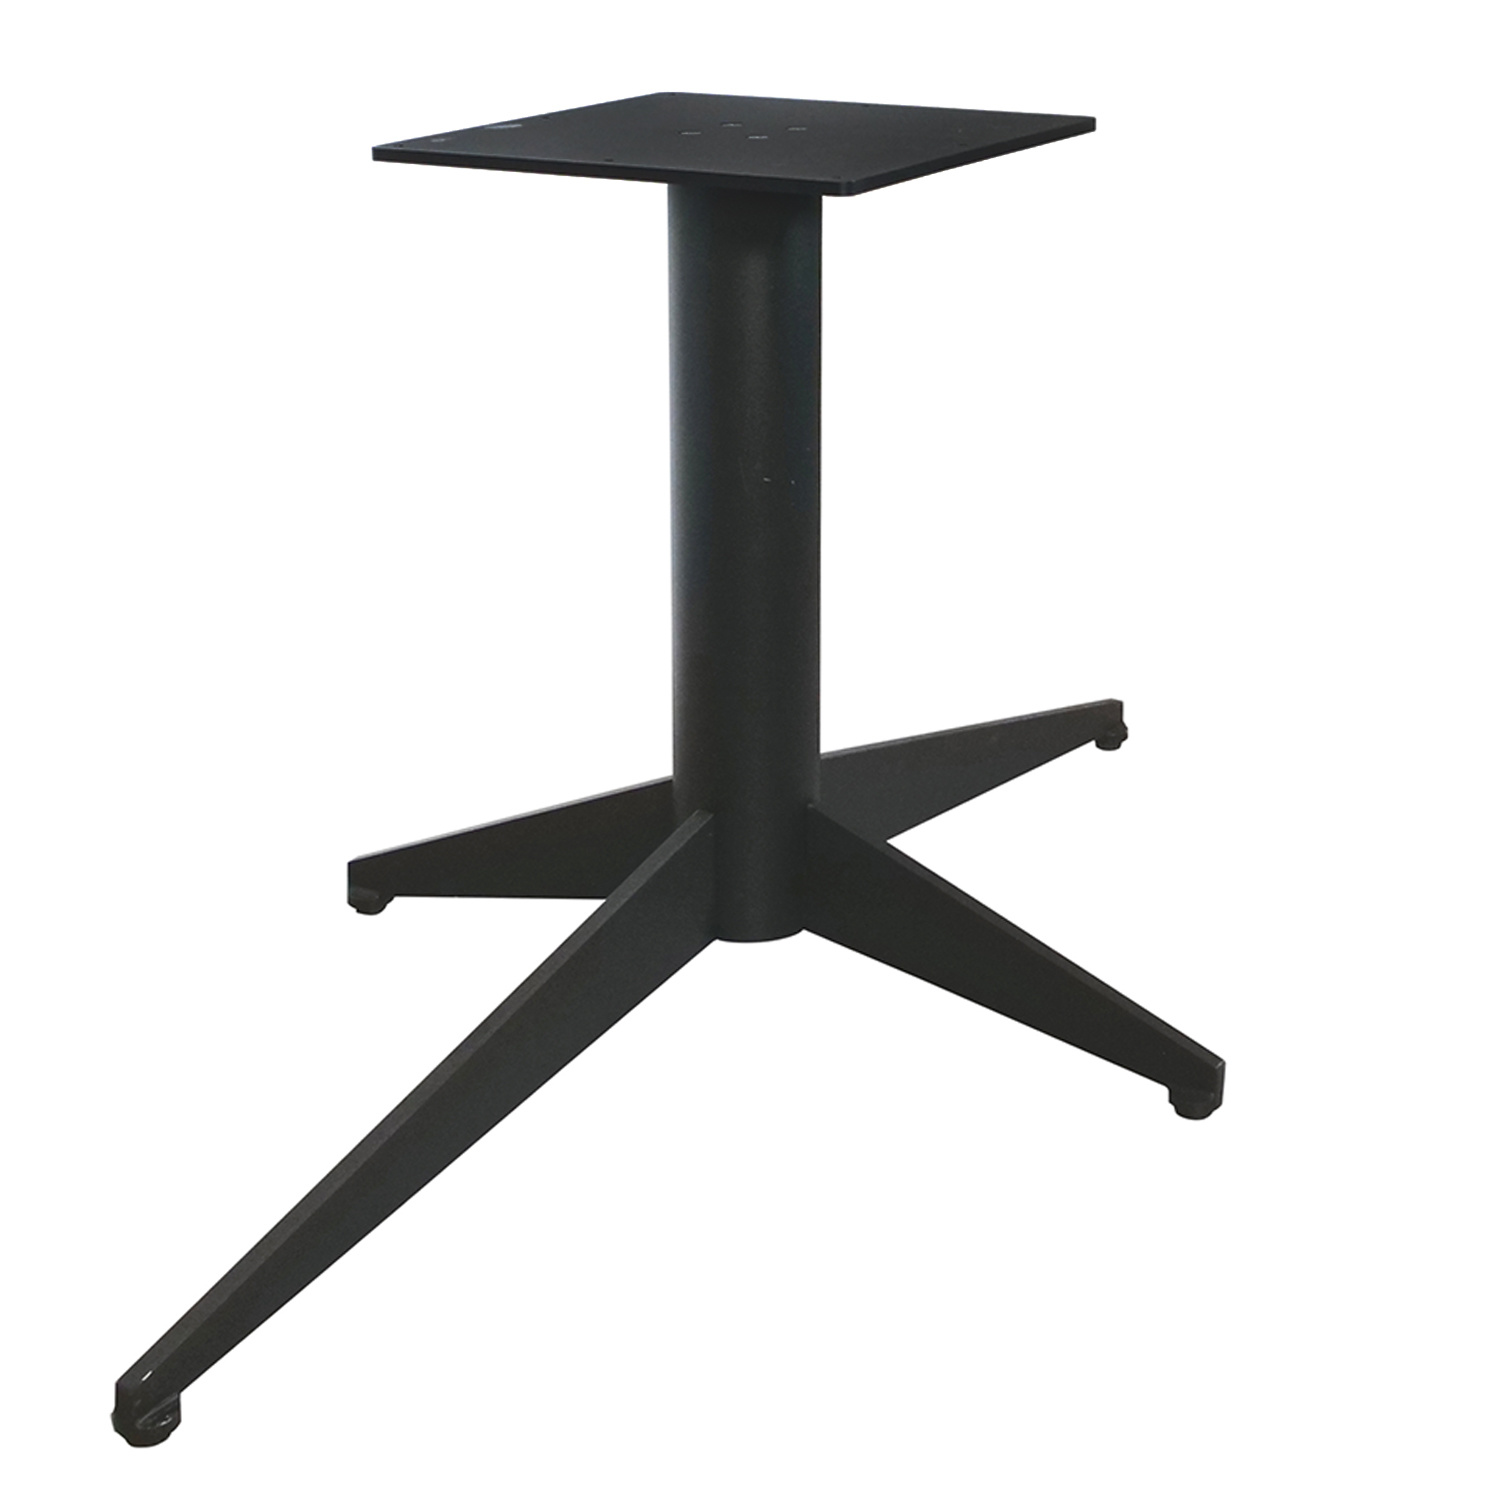  Tischgestell Metall 4-Fuß - 80x140 cm breit - 72,5 cm hoch - Rohrprofil: 11,4 cm - Mehrteilig - Stahl Tischfuß / Mittelfuß - Rechteckig / Oval - Beschichtet - Schwarz